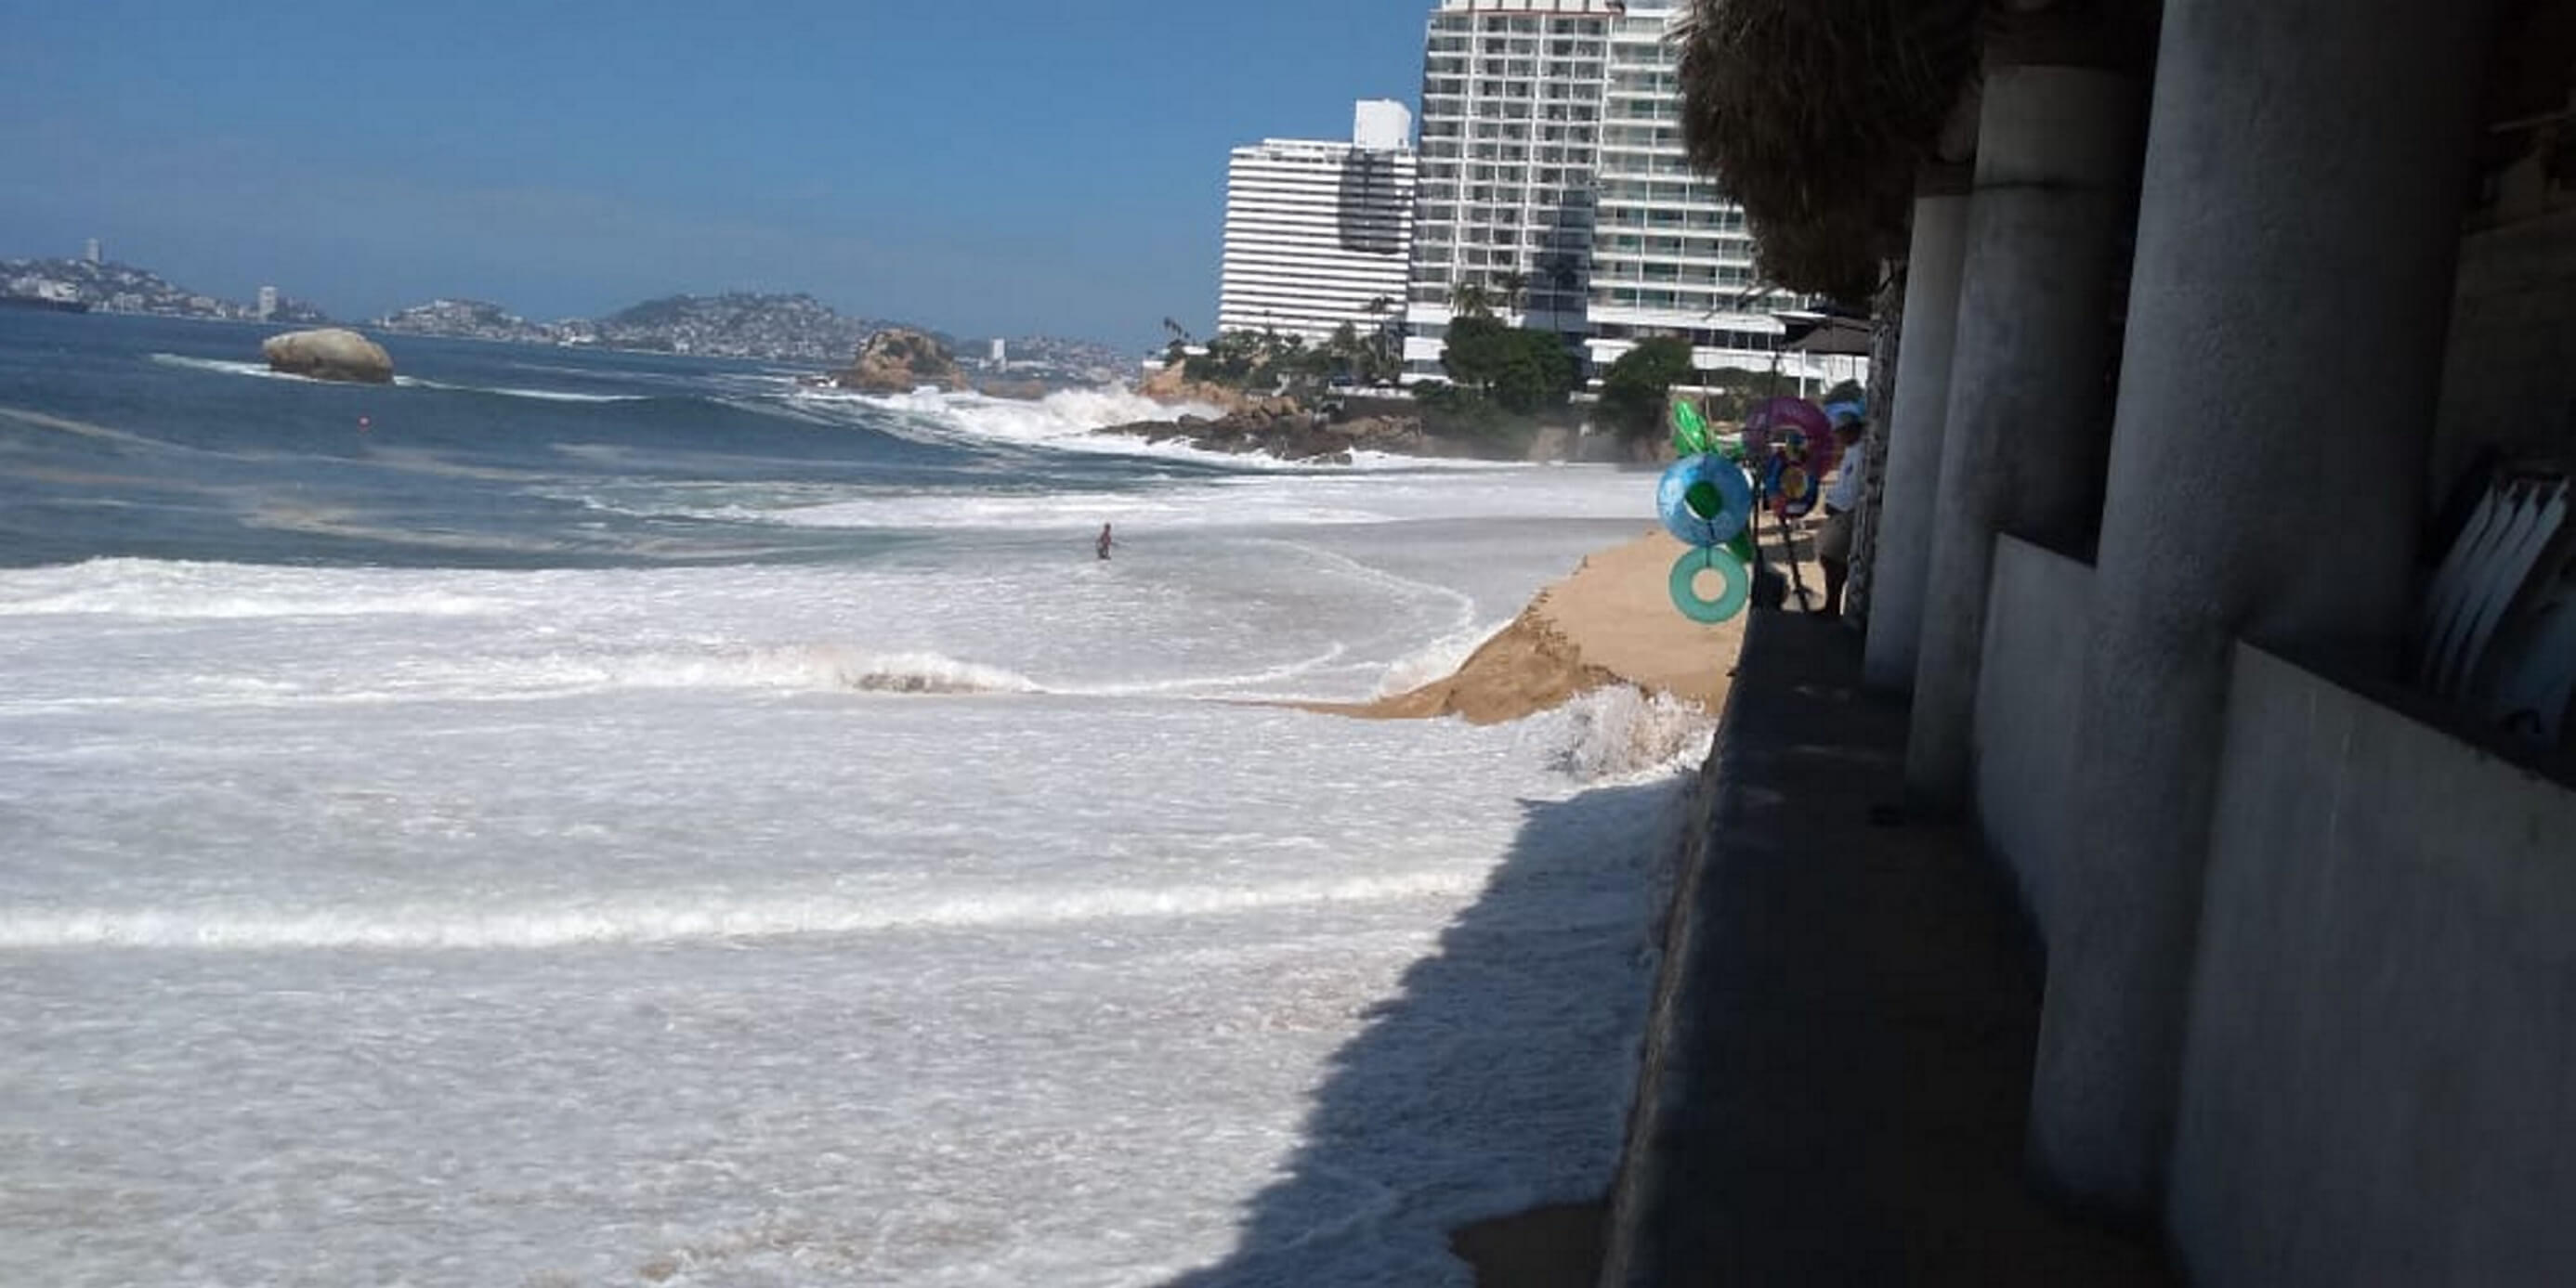 Mar de fondo Acapulco hoy provoca aumento de oleaje